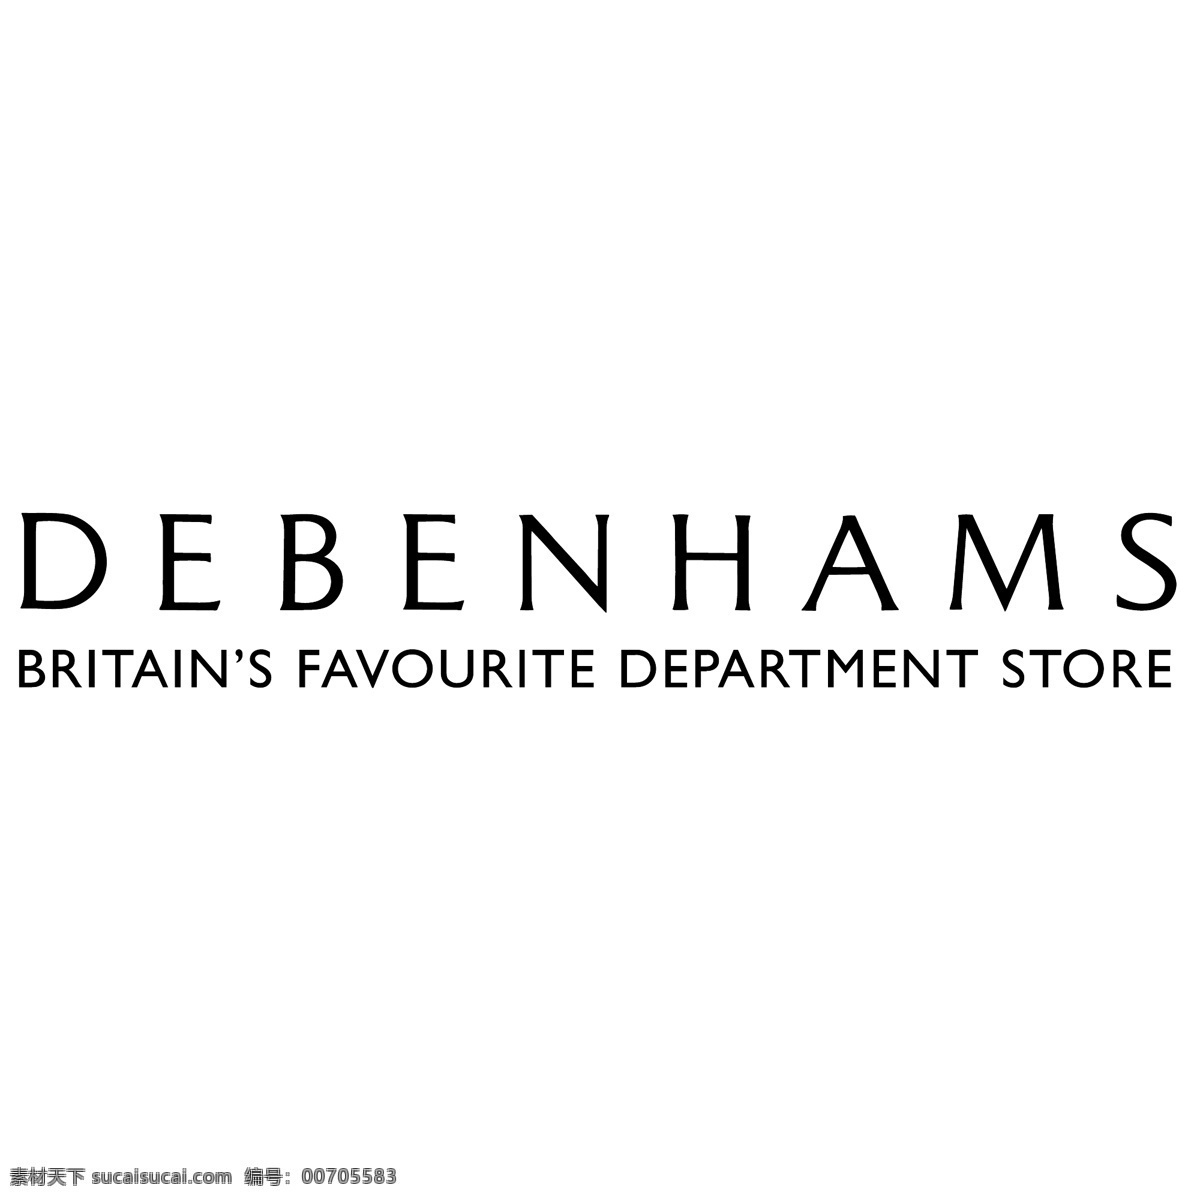 德本 汉姆 公司 百货公司 debenhams 标志 标识向量 向量 矢量 蓝色